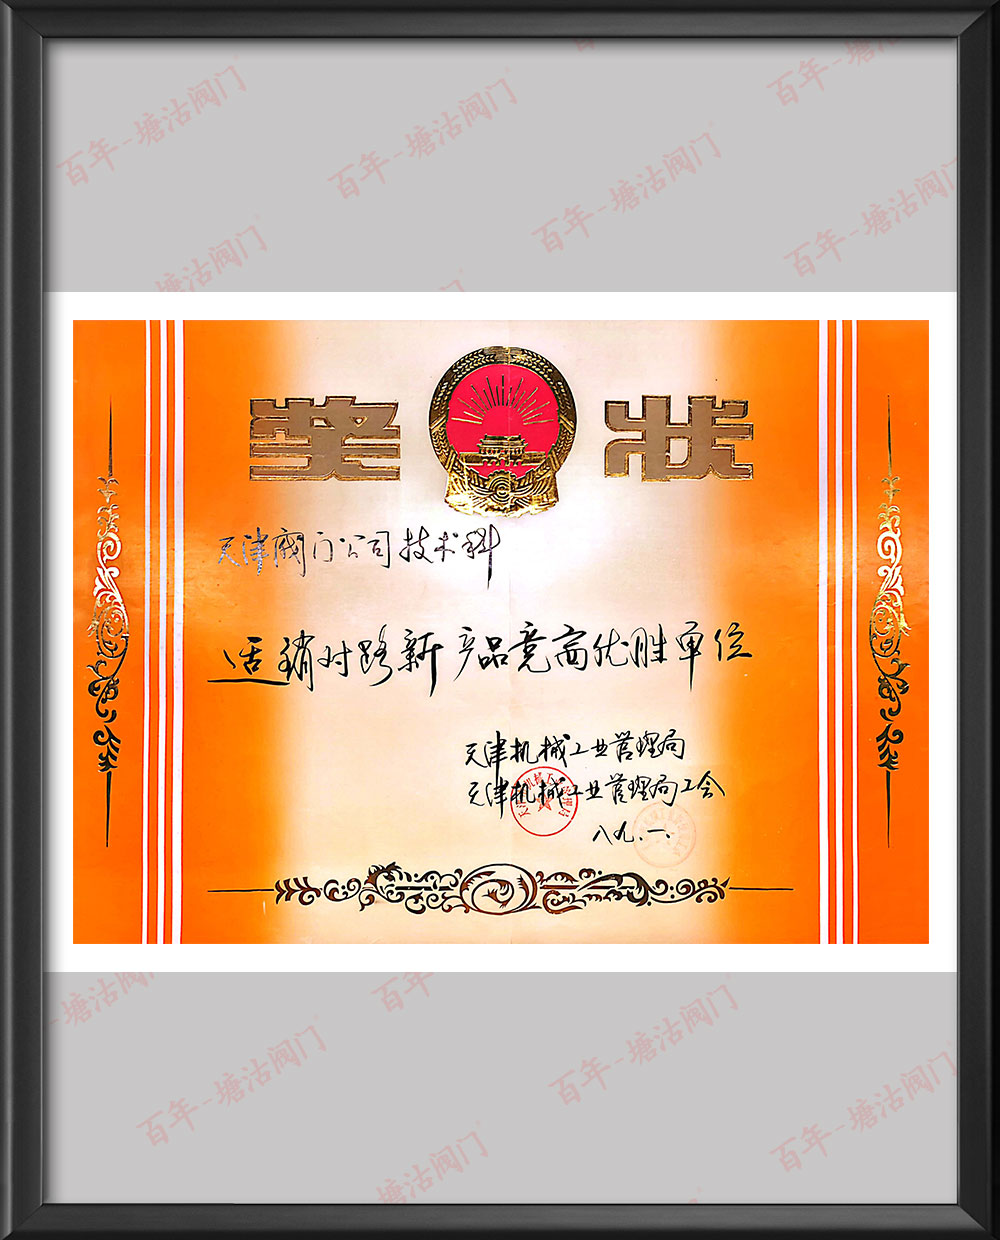 1989年天津機械工業管理局適銷對路新產品競賽優勝單位